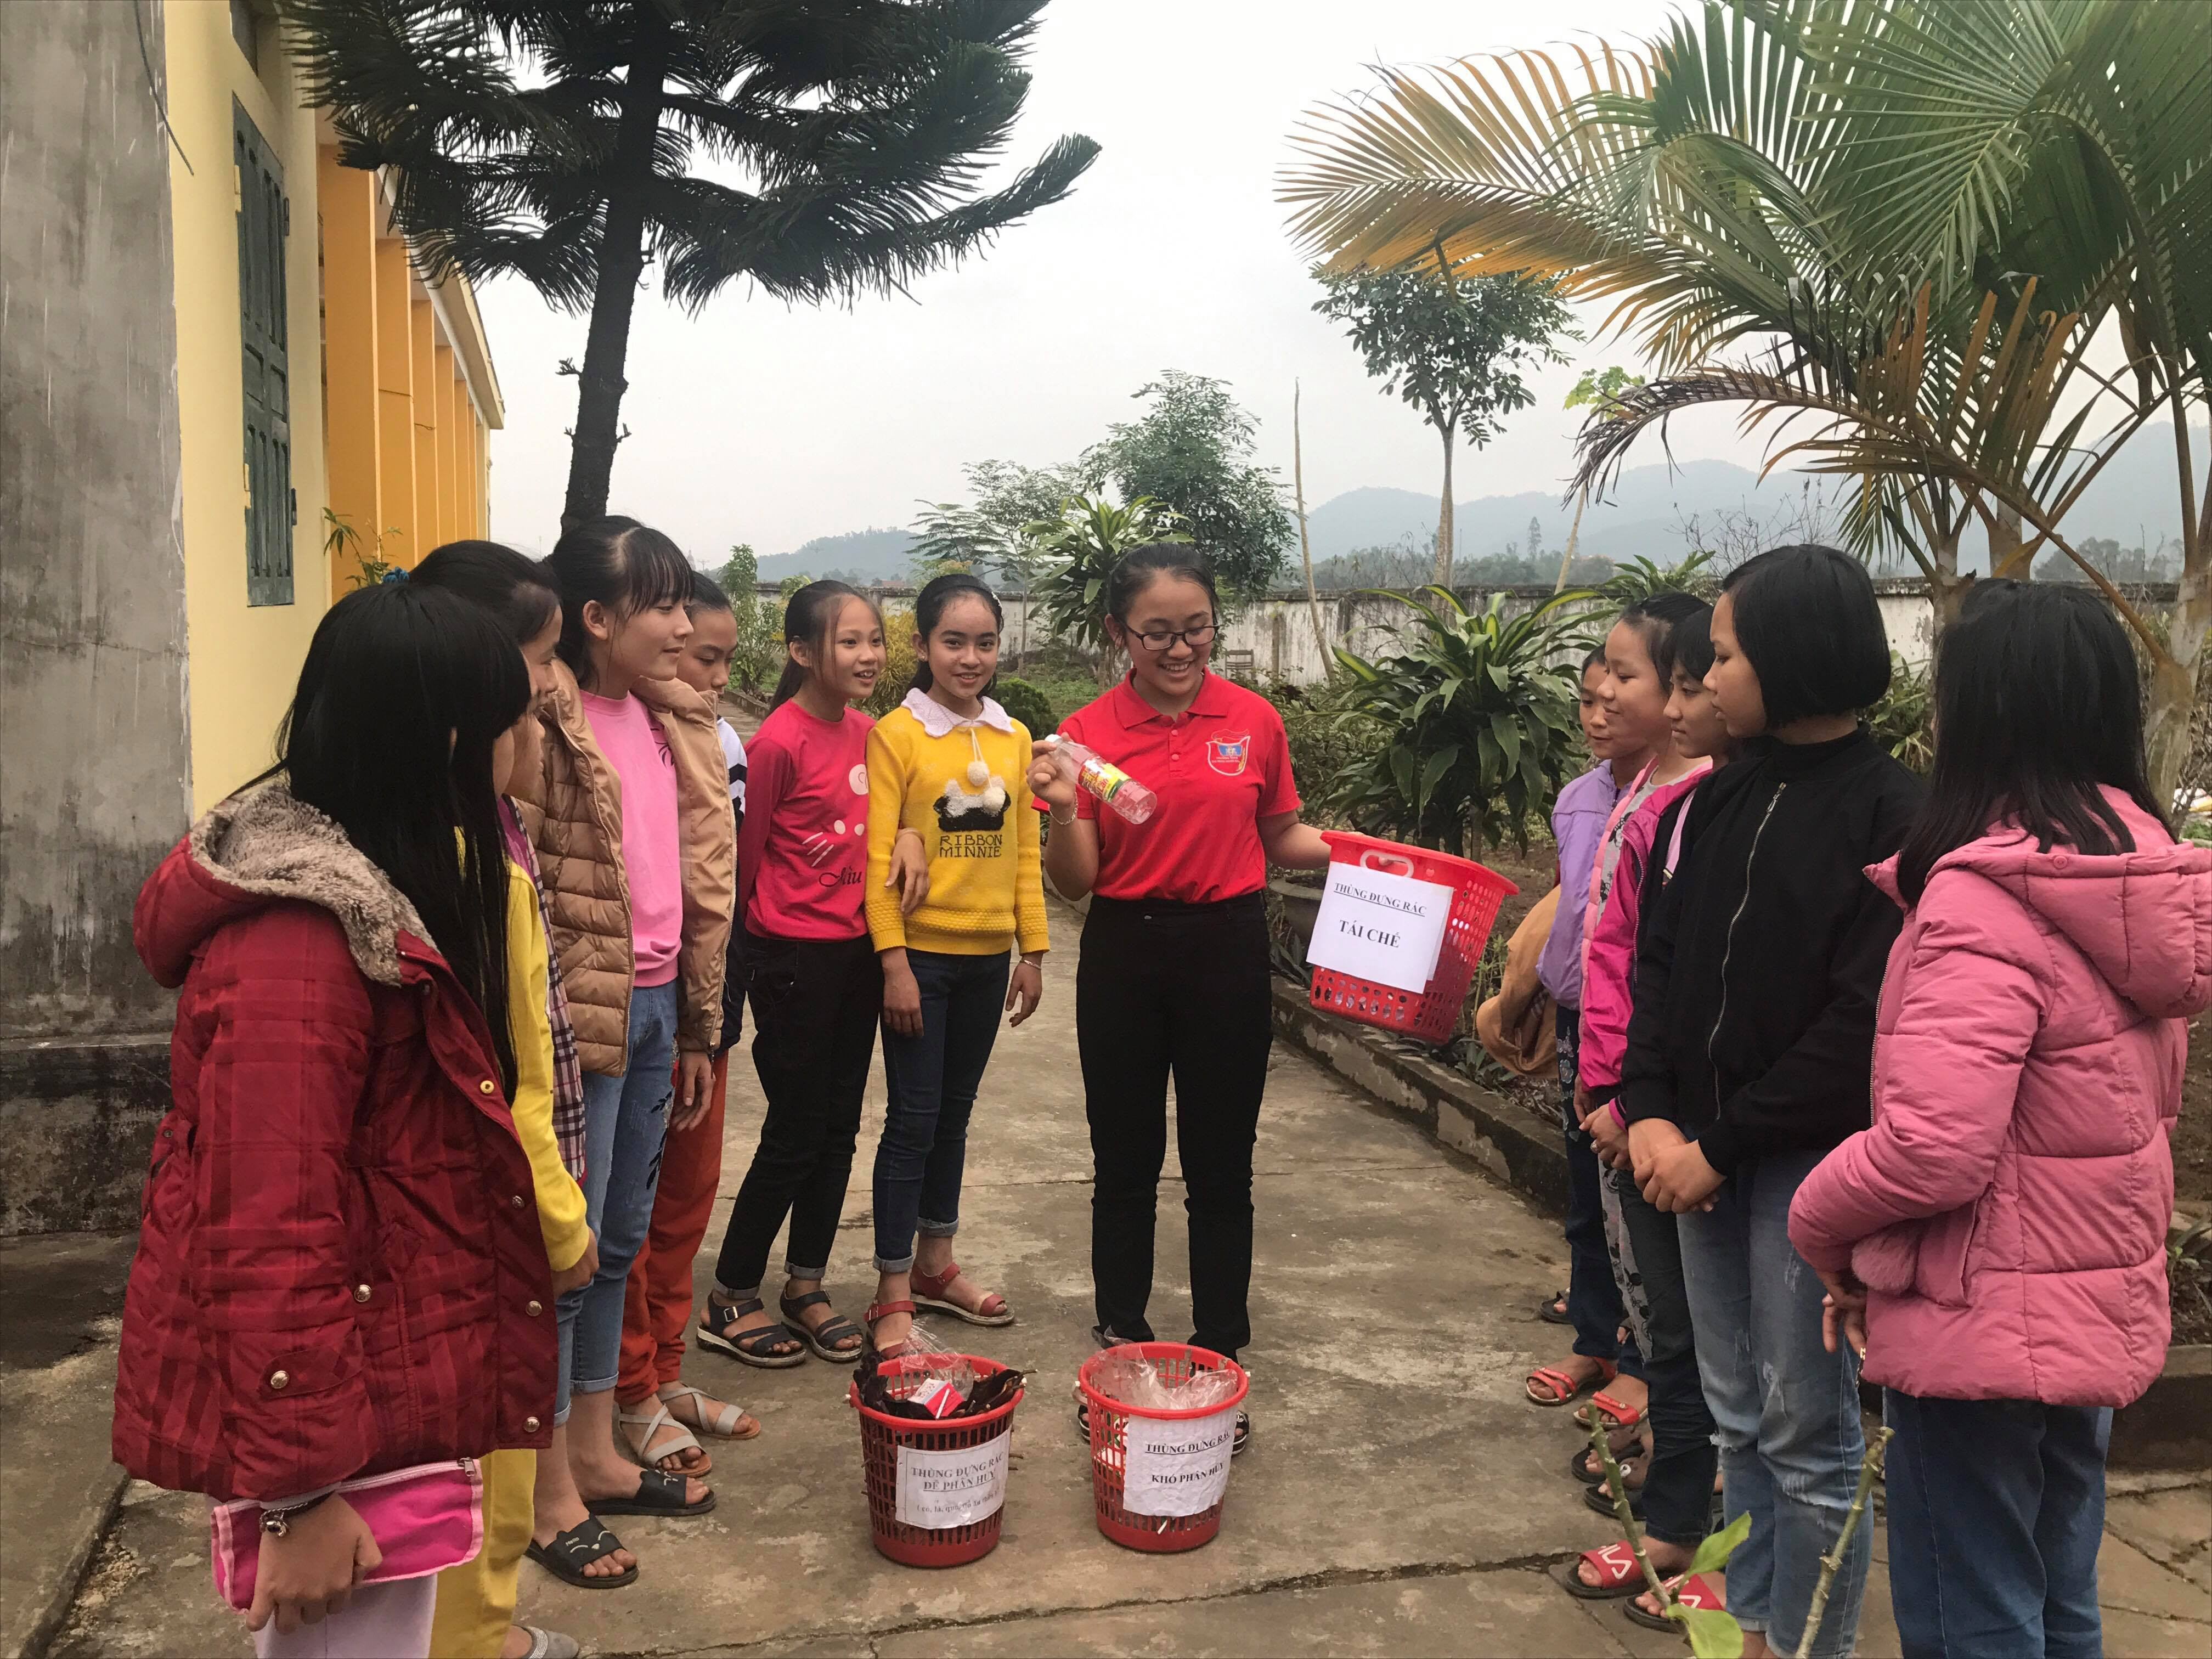 Quỳnh Nhi hướng dẫn cho các em học sinh lớp dưới nhận biết các loại rác. Ảnh Minh Thái